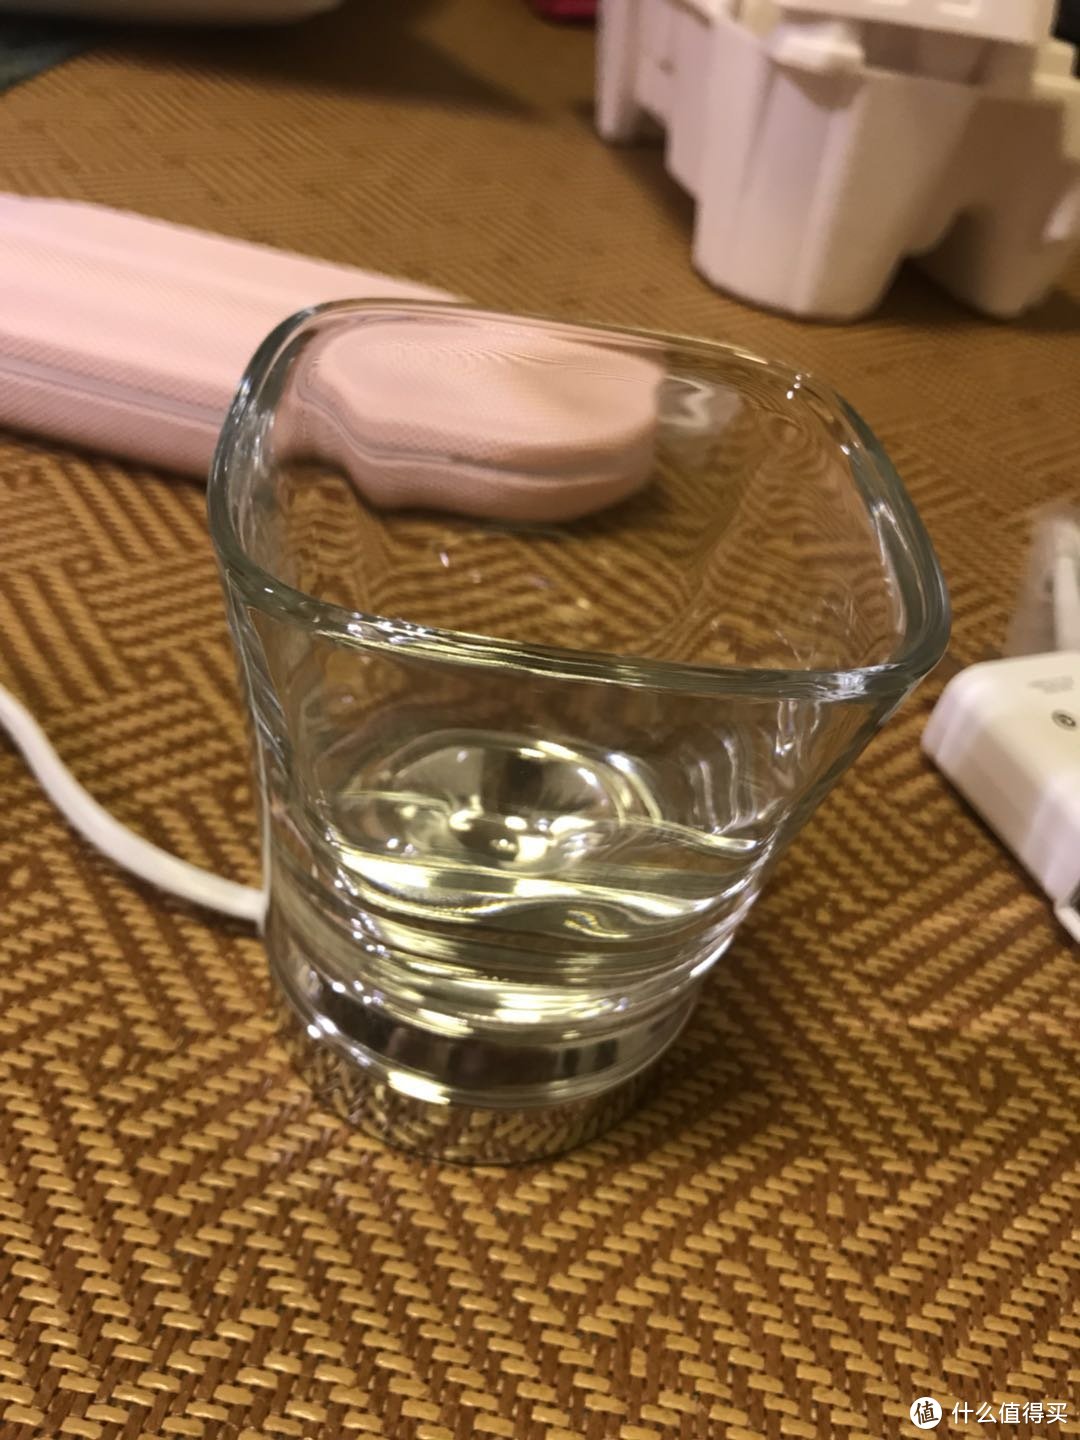 非常讨巧的设计，玻璃杯其实就是普通玻璃杯，底部凹陷进去可以和底座重合，达到无线充电的效果，以前还以为无线充电杯的关键在于杯子呢。